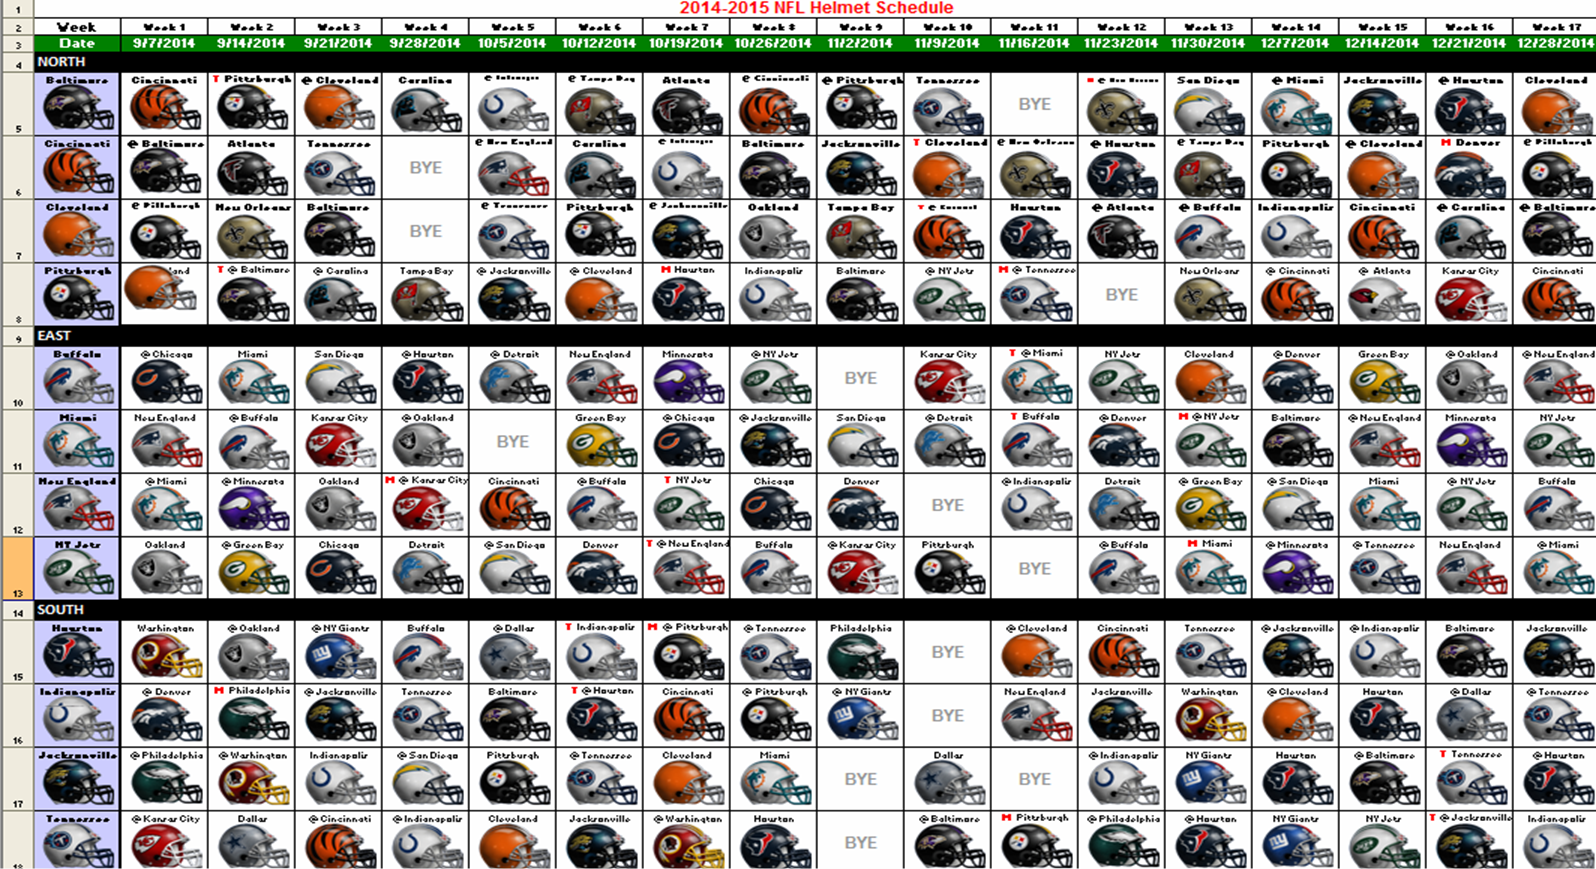 Excel Spreadsheets Help: 2014 NFL Helmet Schedule